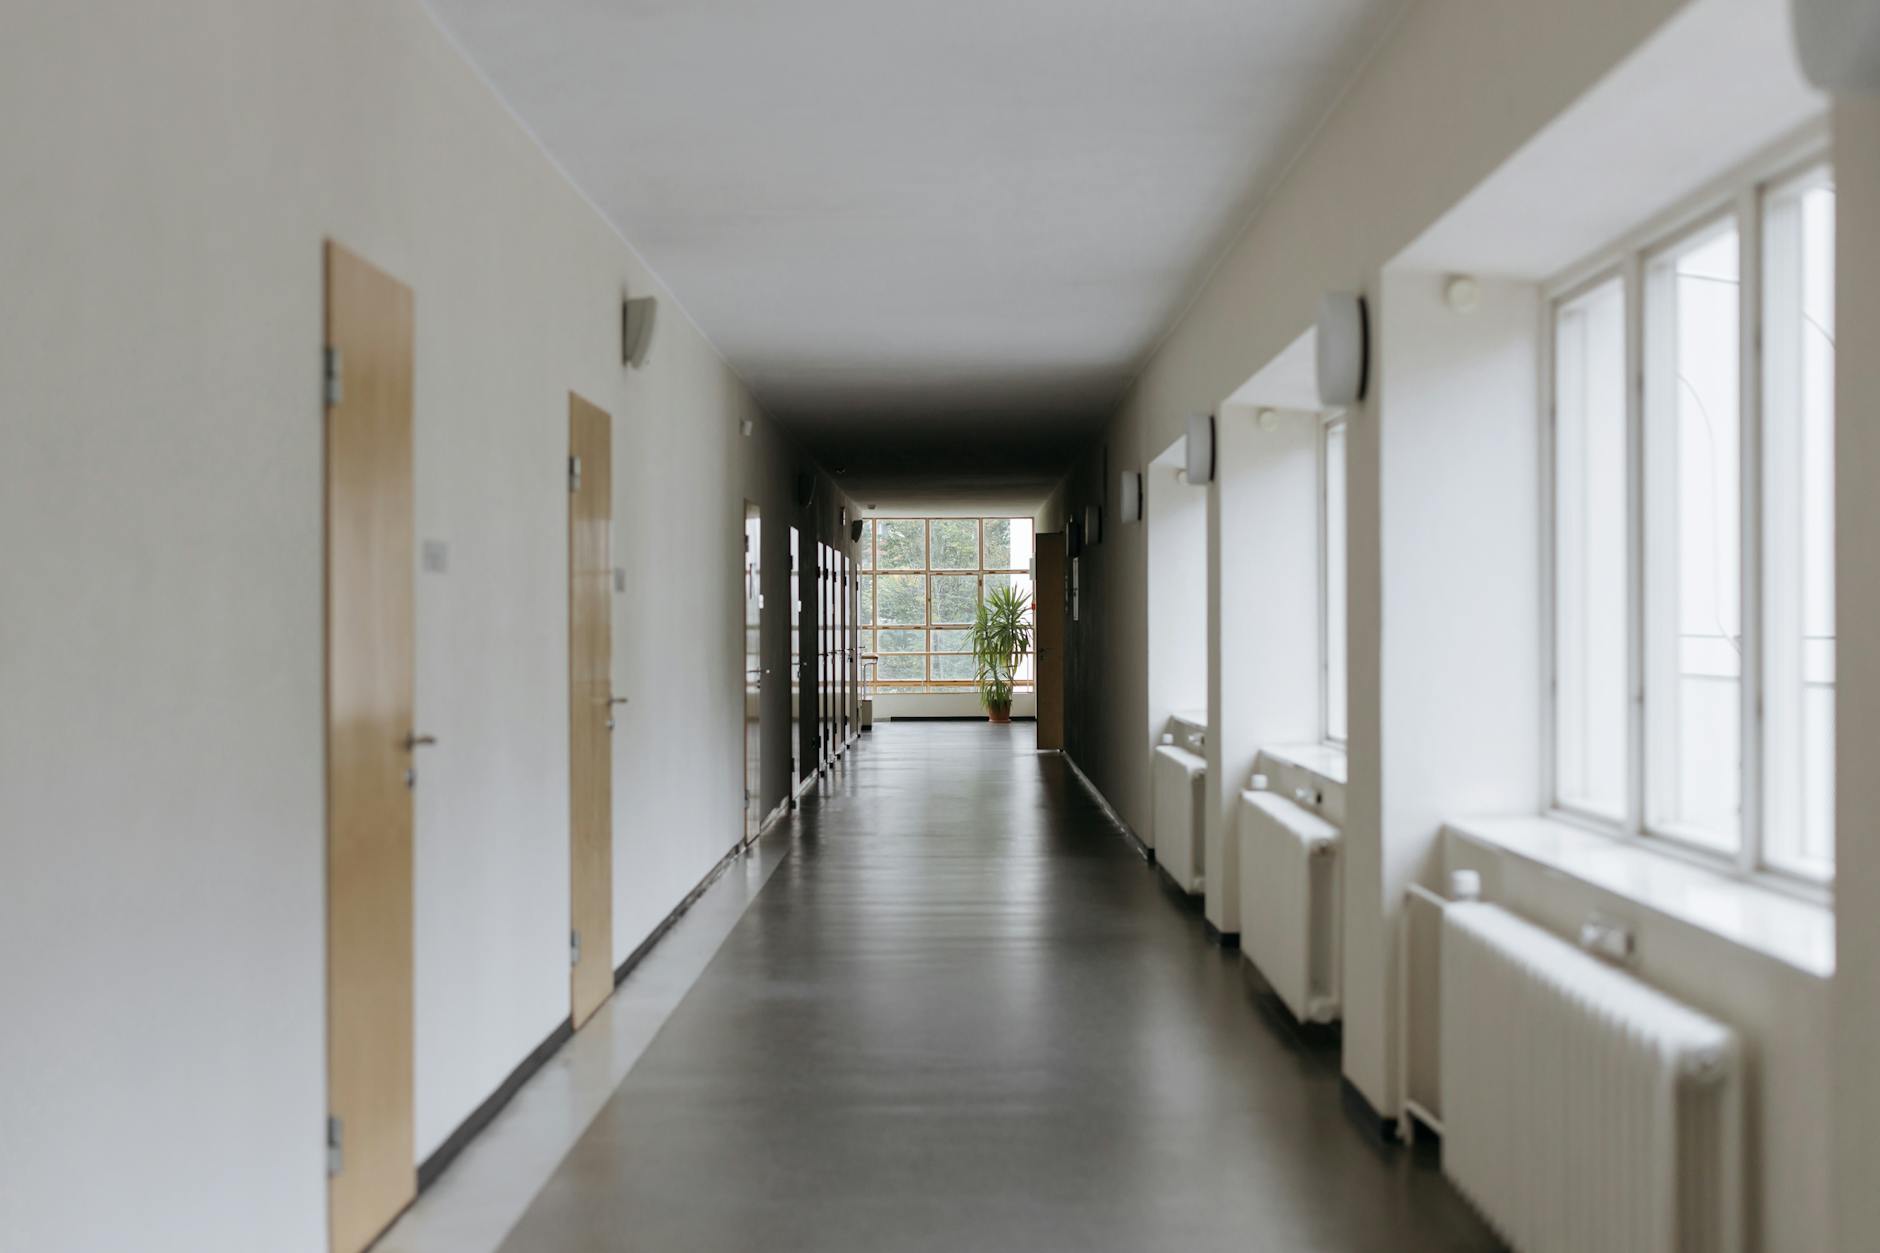 White Hallway With White Walls · Free Stock Photo